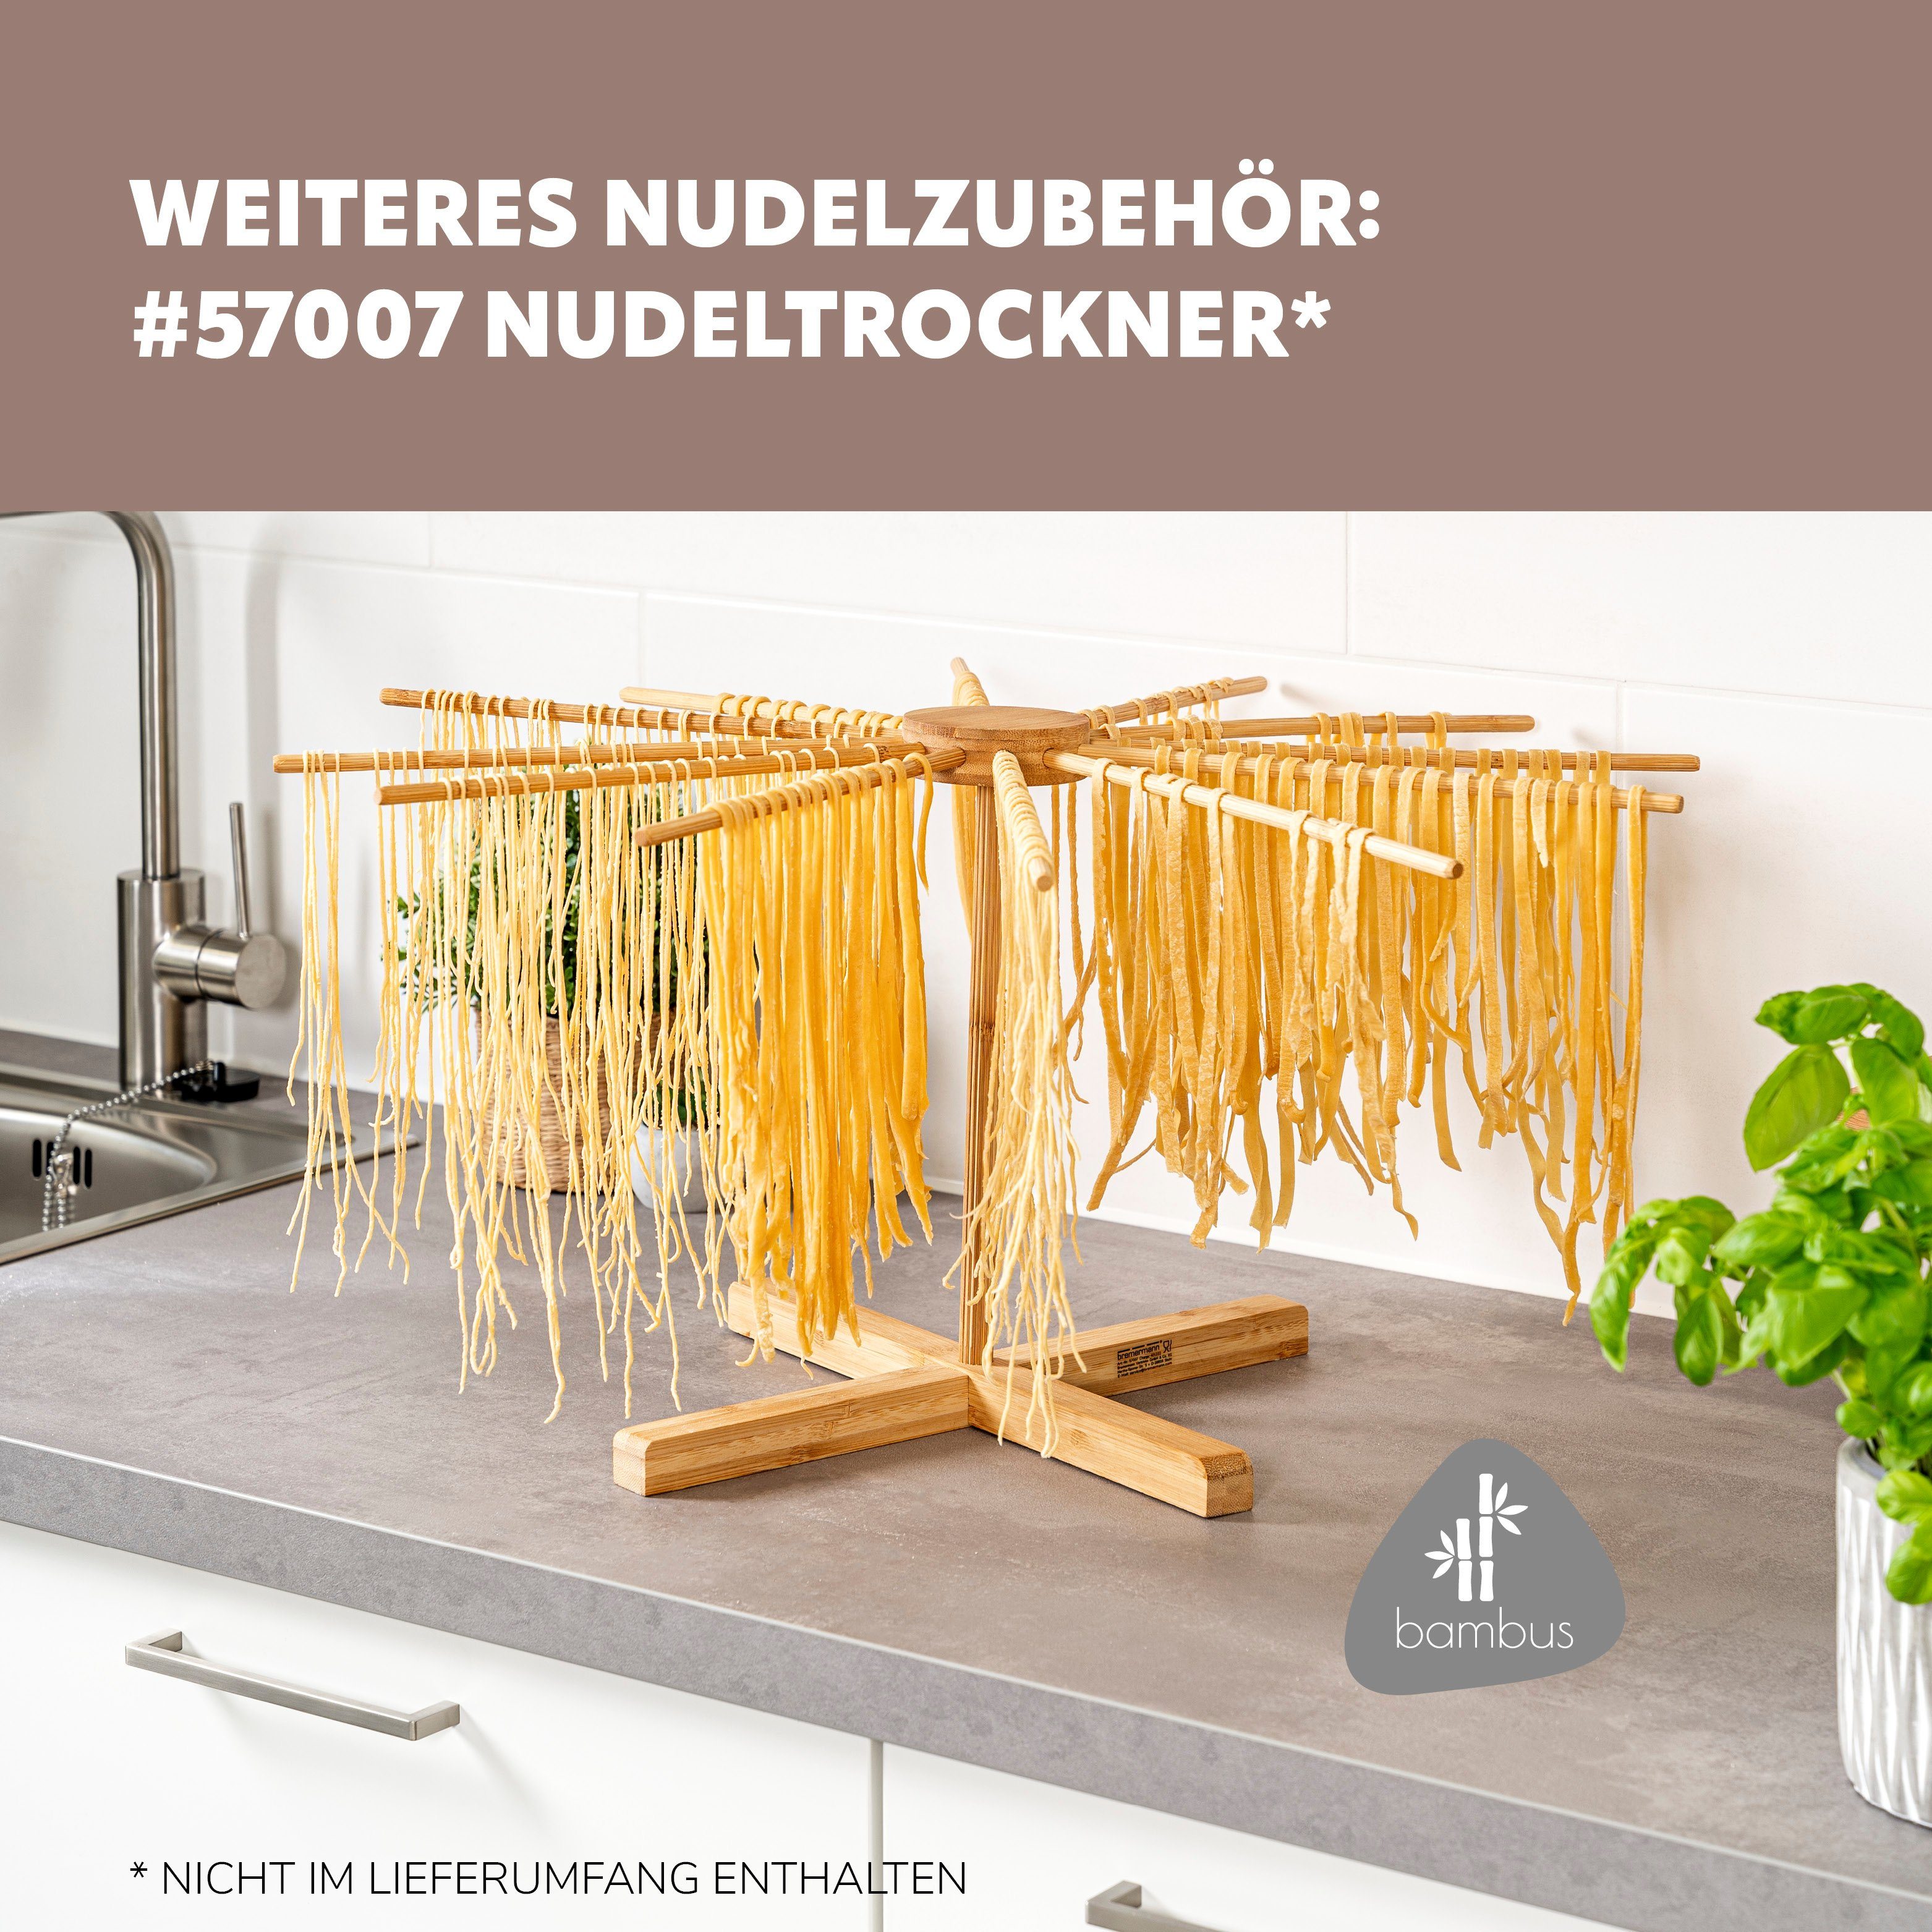 bremermann - Pasta, Nudelmaschine Edelstahl Nudelmaschine bremermann Stufen, rot Edelstahl/Metall Spaghetti, 7 für